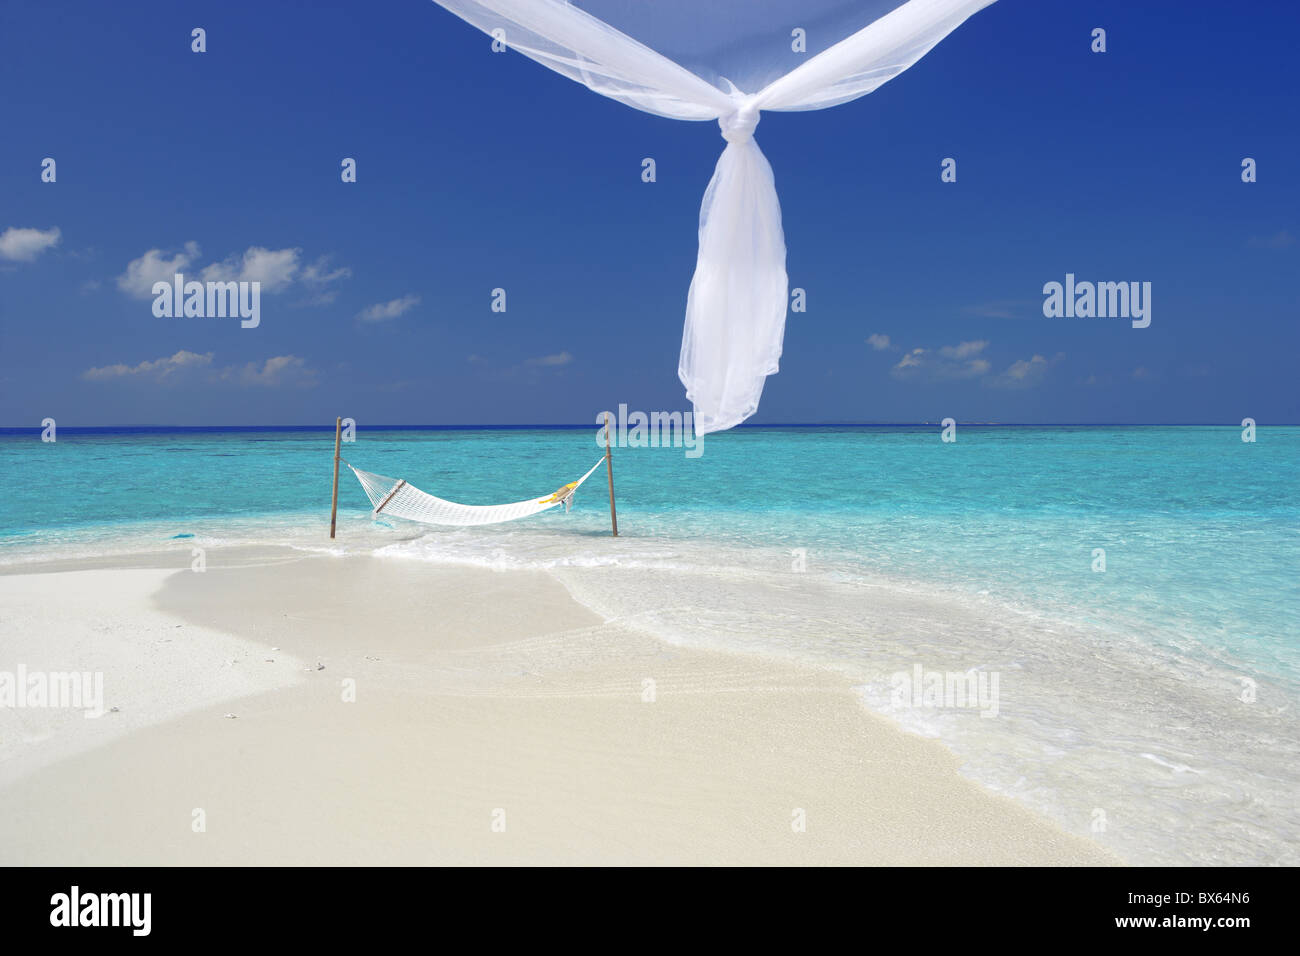 Hängematte hängen im flachen klaren Wasser, die Malediven, Indischer Ozean, Asien Stockfoto